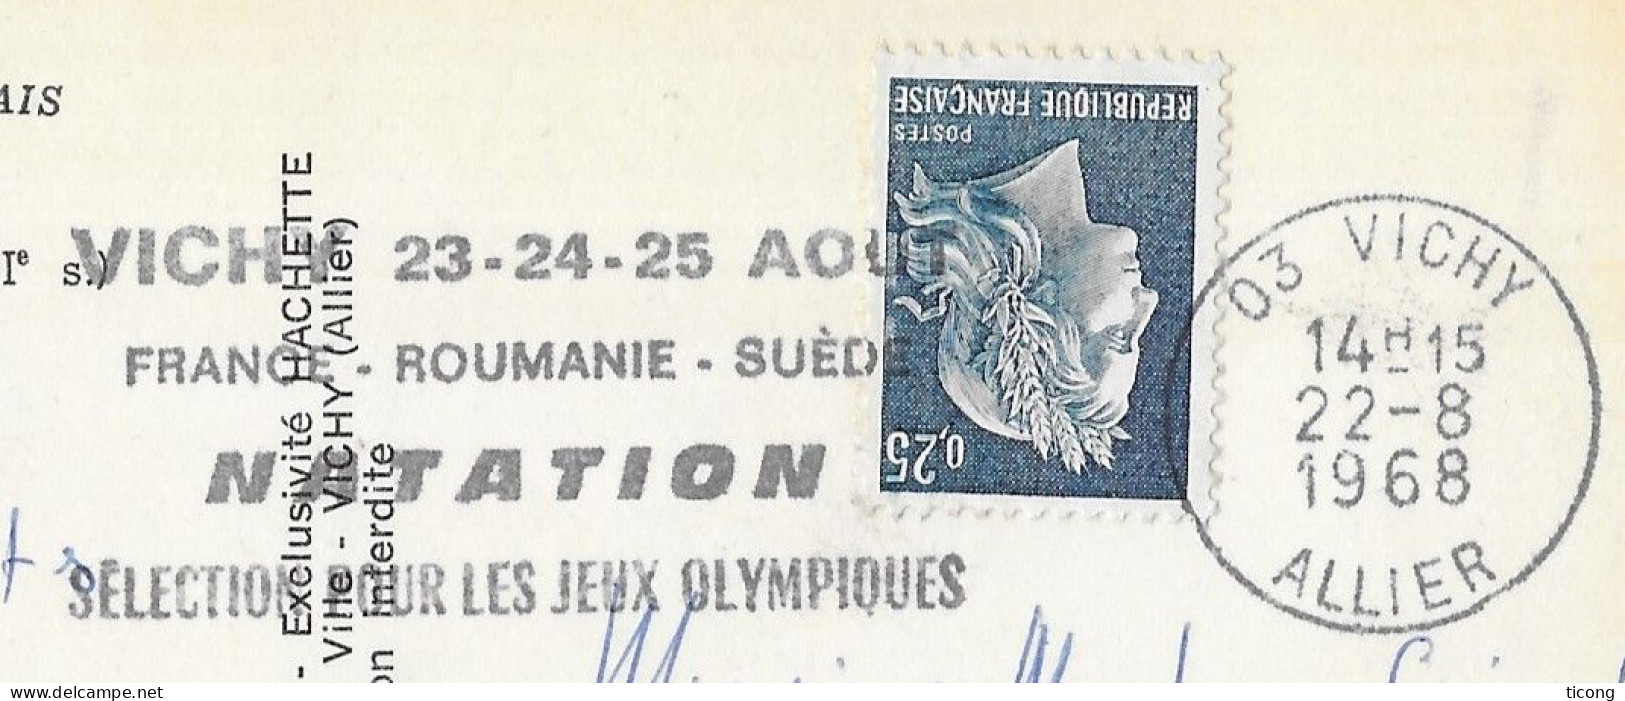 VICHY ALLIER 1968 FLAMME SELECTION POUR LES JEUX OLYMPIQUES DE NATATION FRANCE ROUMANIE SUEDE, CARTE HERISSON MOULIN - Storia Postale